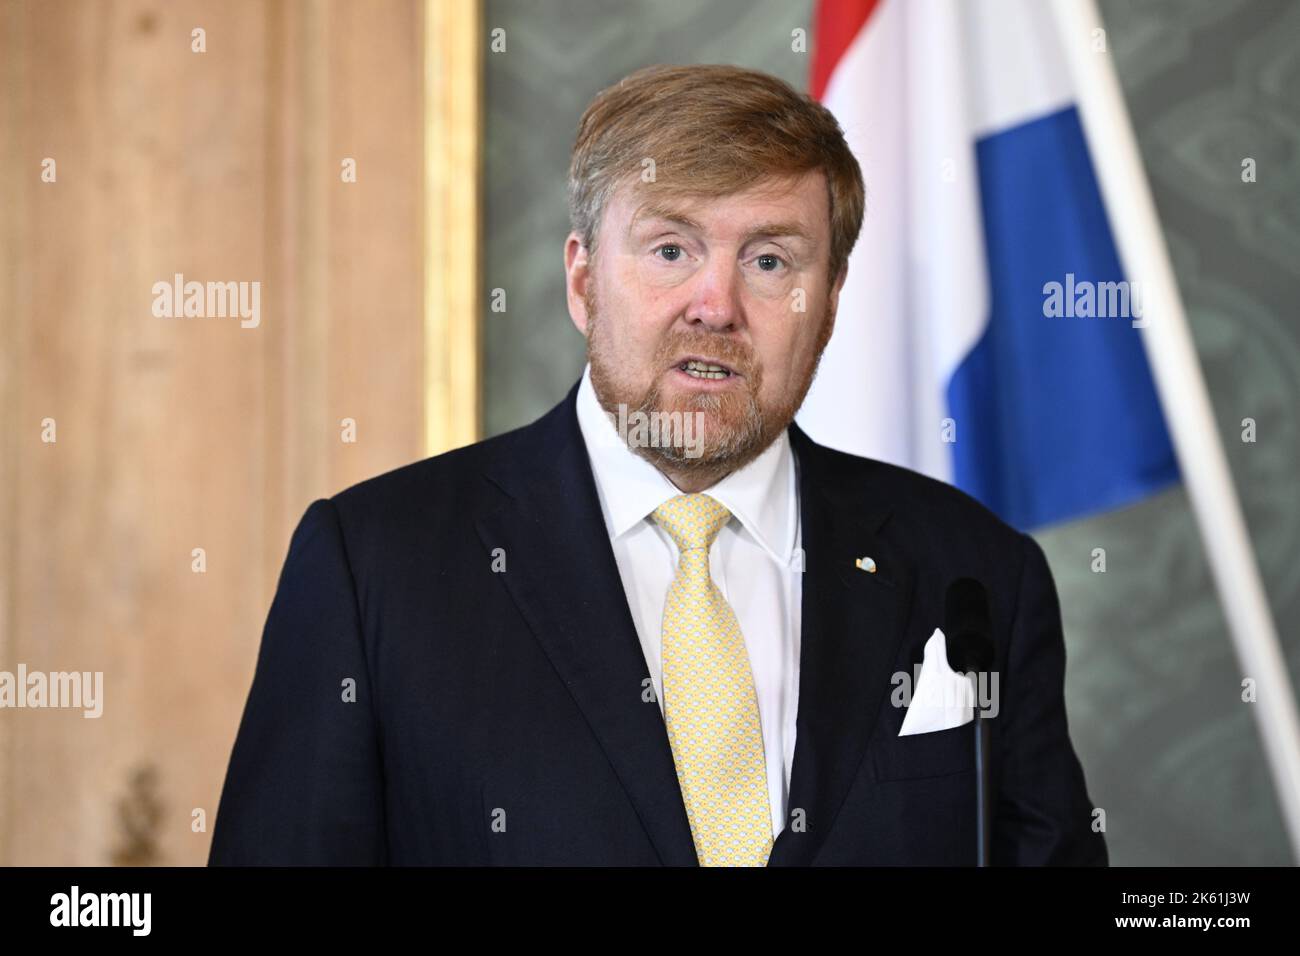 König Willem-Alexander gibt eine Presseerklärung in Queen Lovisa Ulrika's Dining Hall ab. Stockholm, Schweden, 11. Oktober 2022. Foto: Henrik Montgomery / TT / Code 10060 Stockfoto